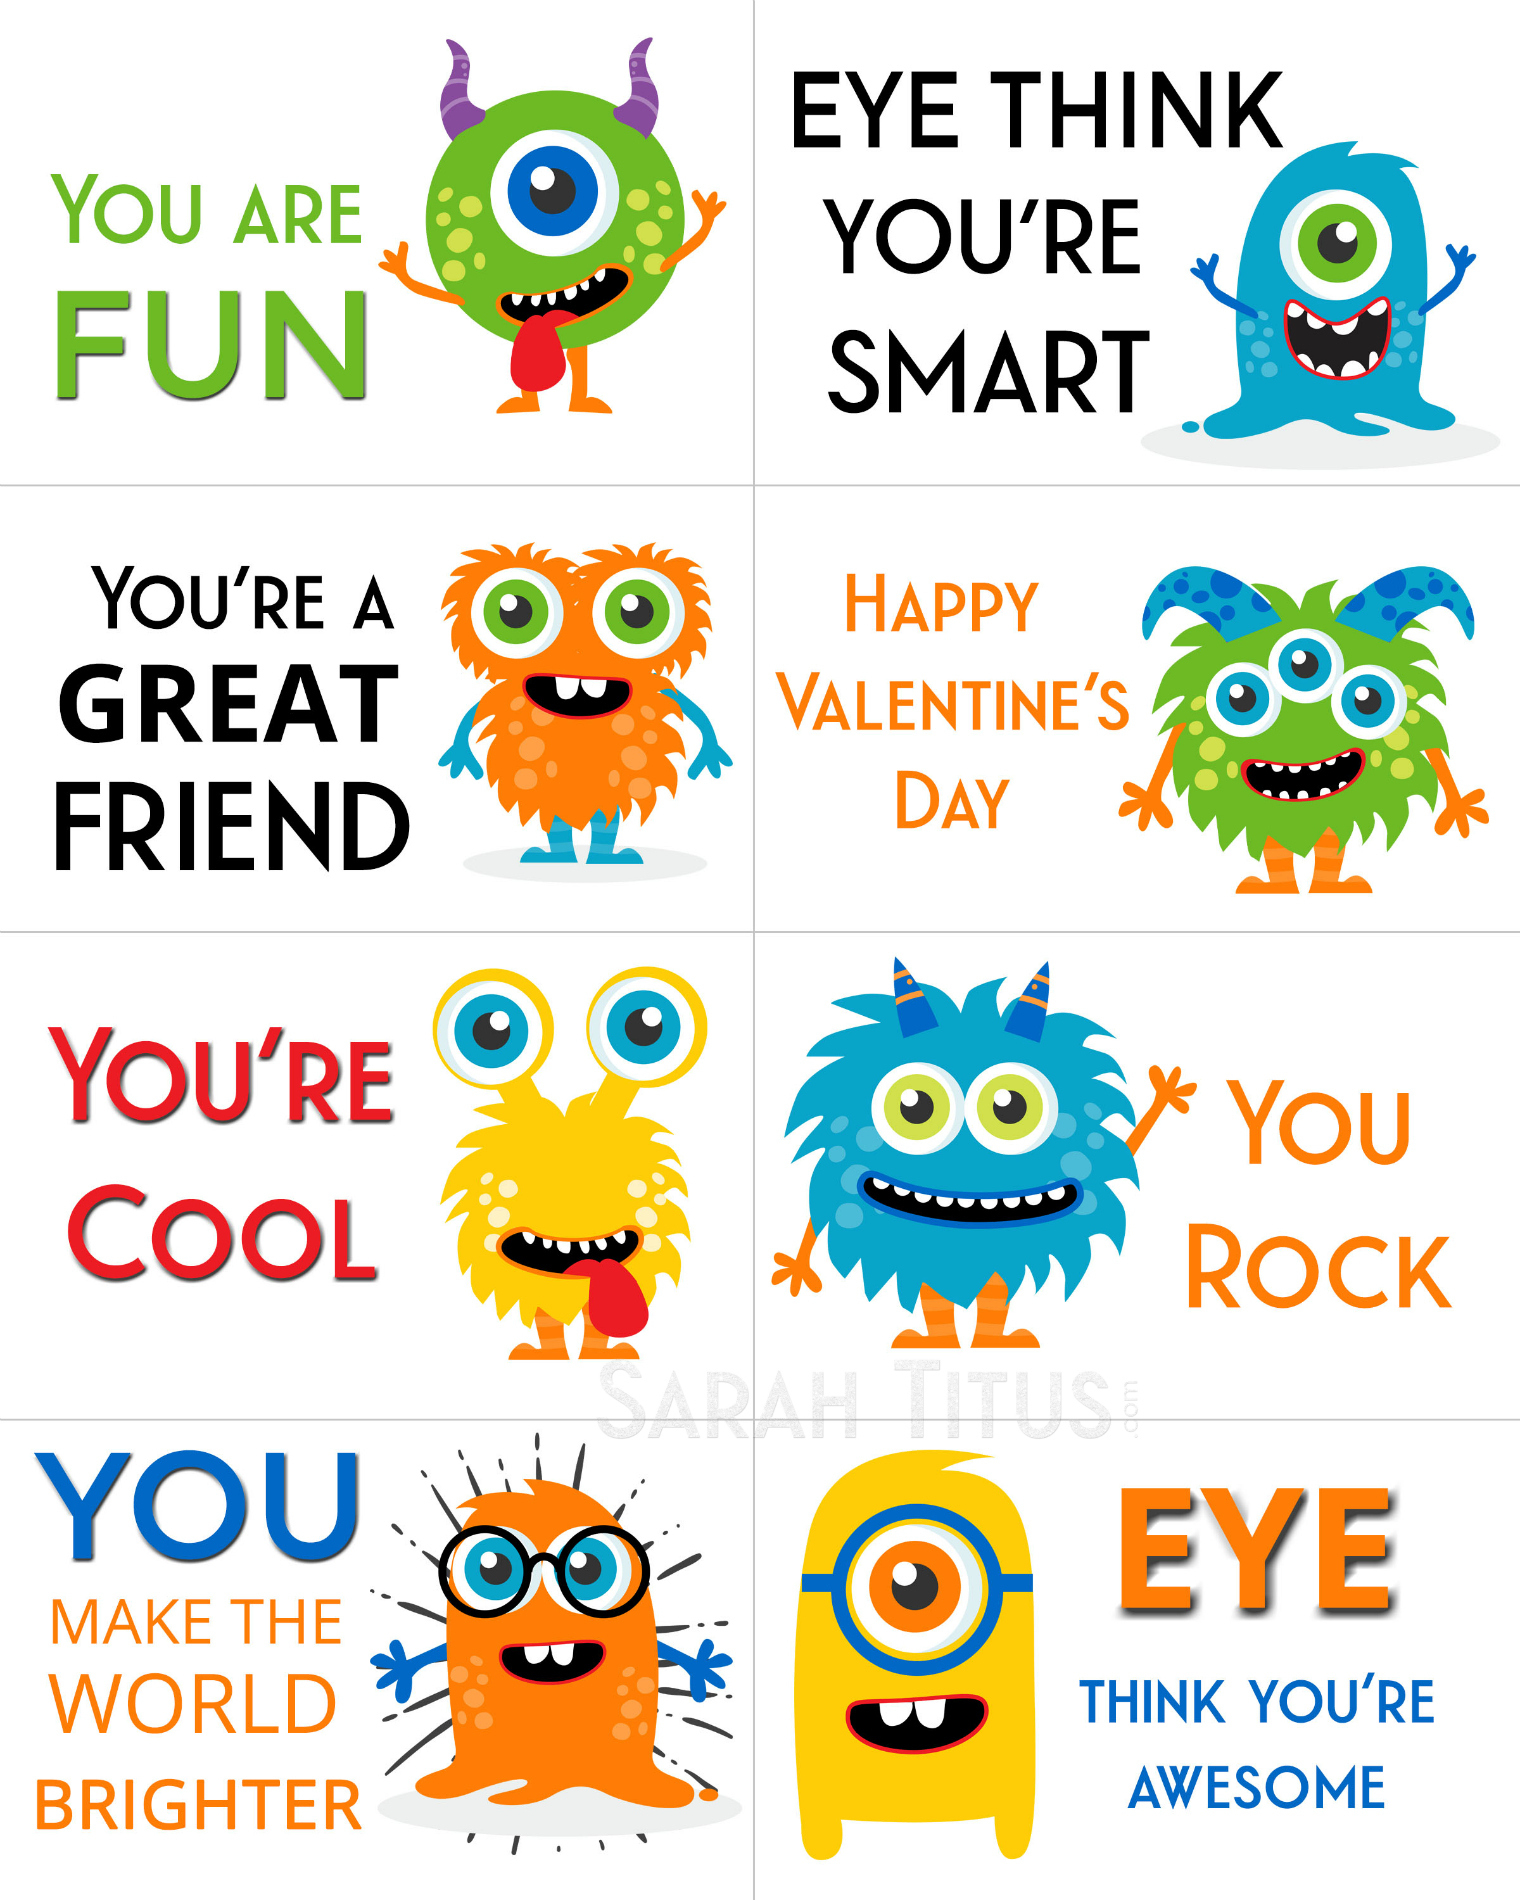 Free Printable Valentine Cards - Sarah Titus - Free Printable Valentine Cards For Preschoolers